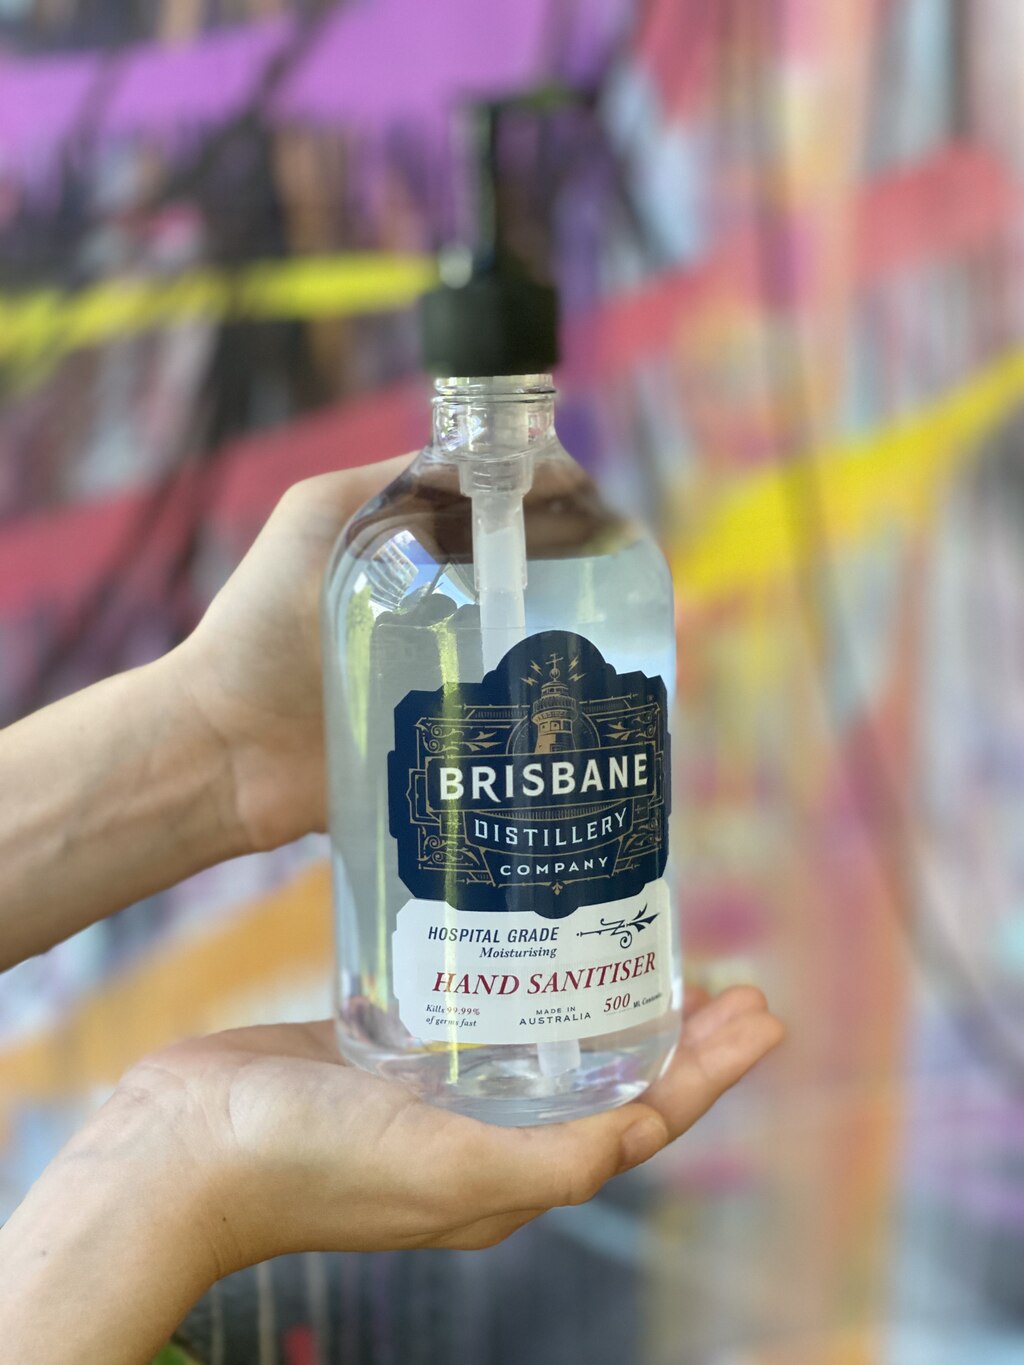 Brisbane Distillery hand sanitiser, image supplied